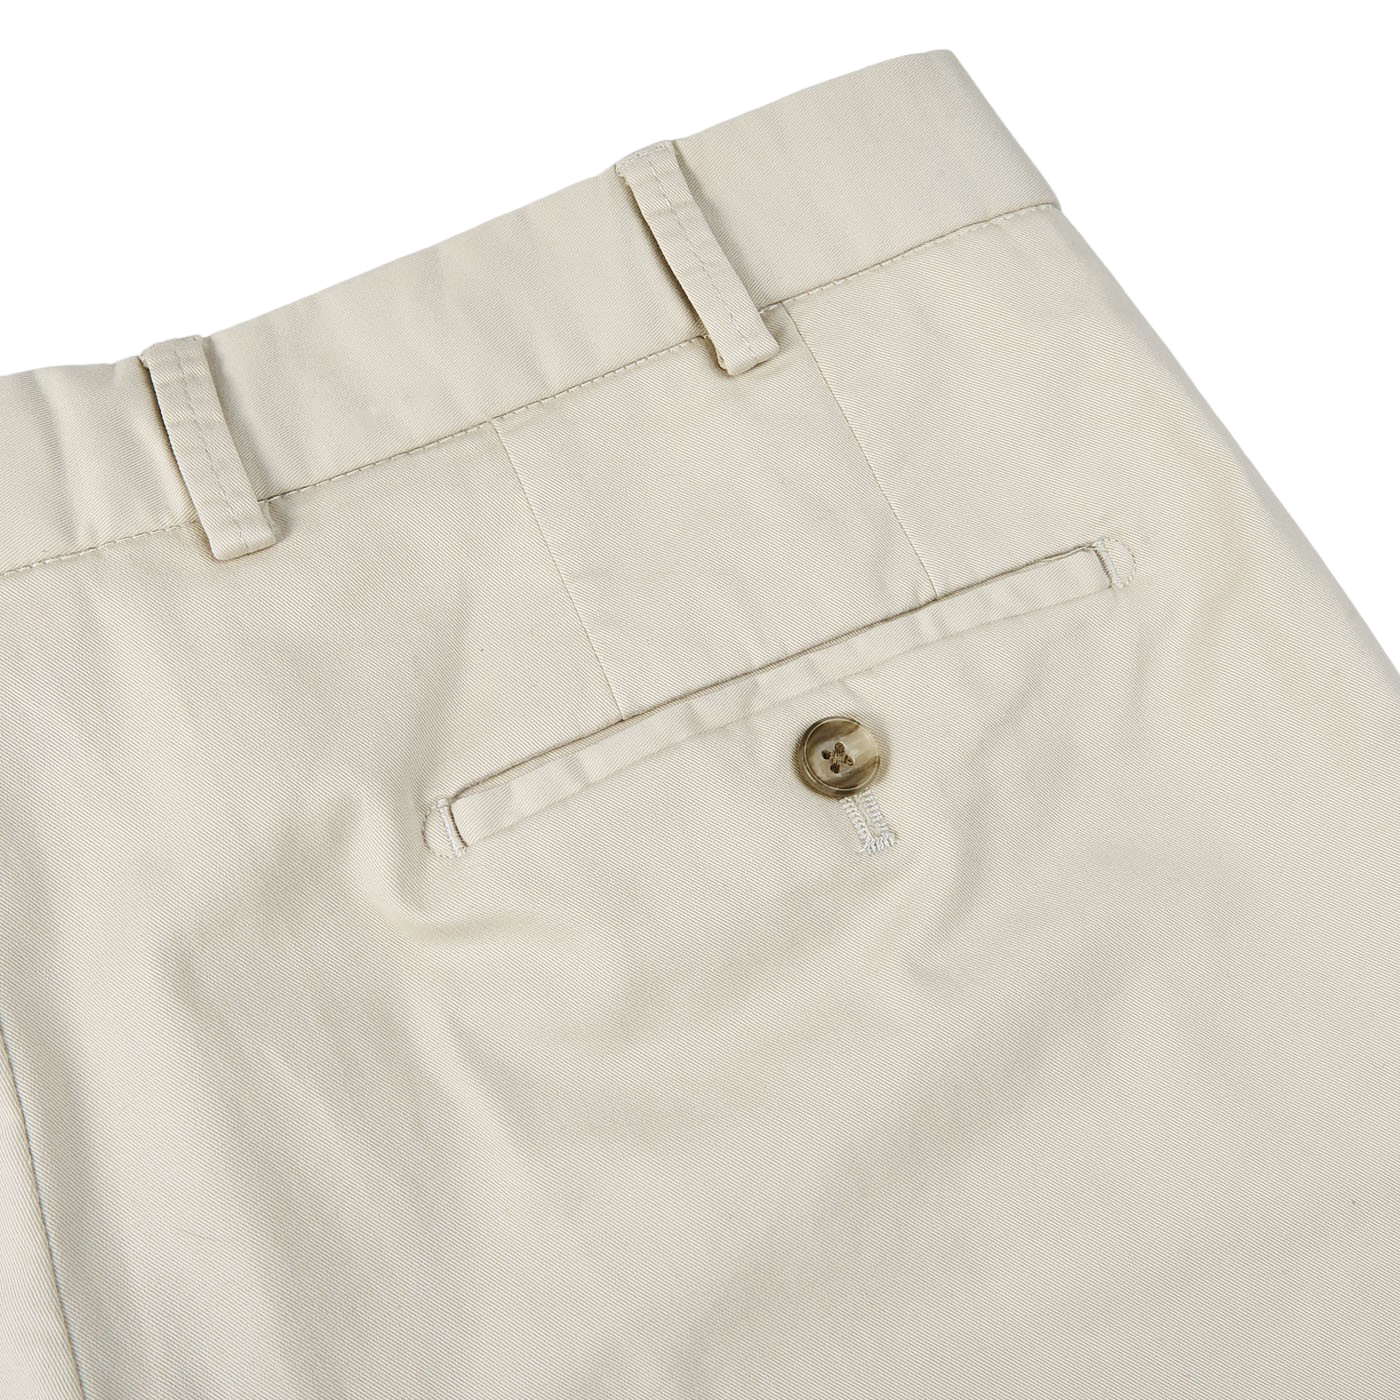 Hiltl Stone Beige Cotton Stretch Regular Fit Chinos Pocket